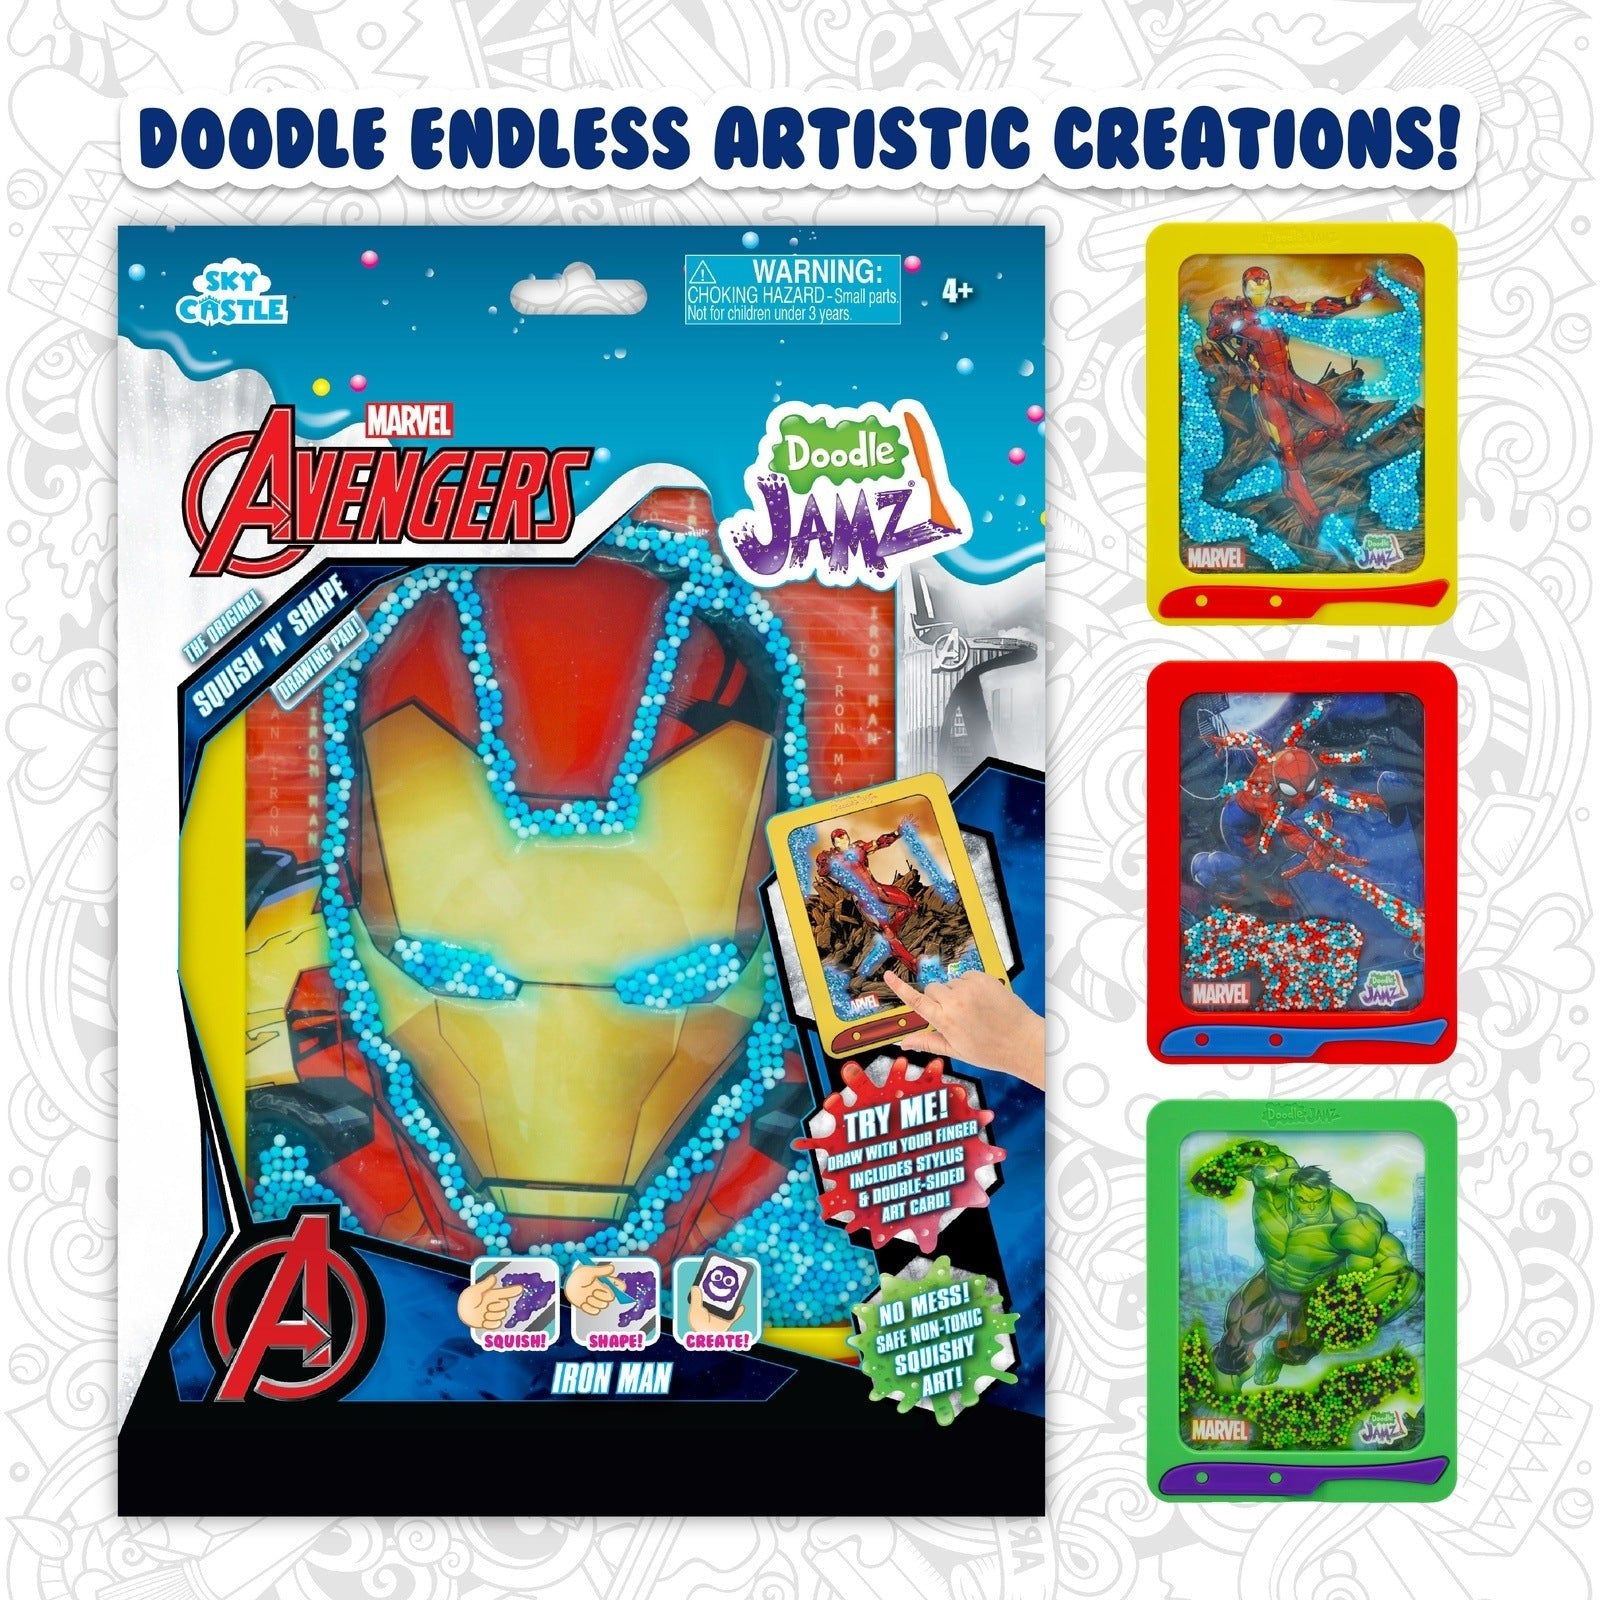 DoodleJamz Marvel